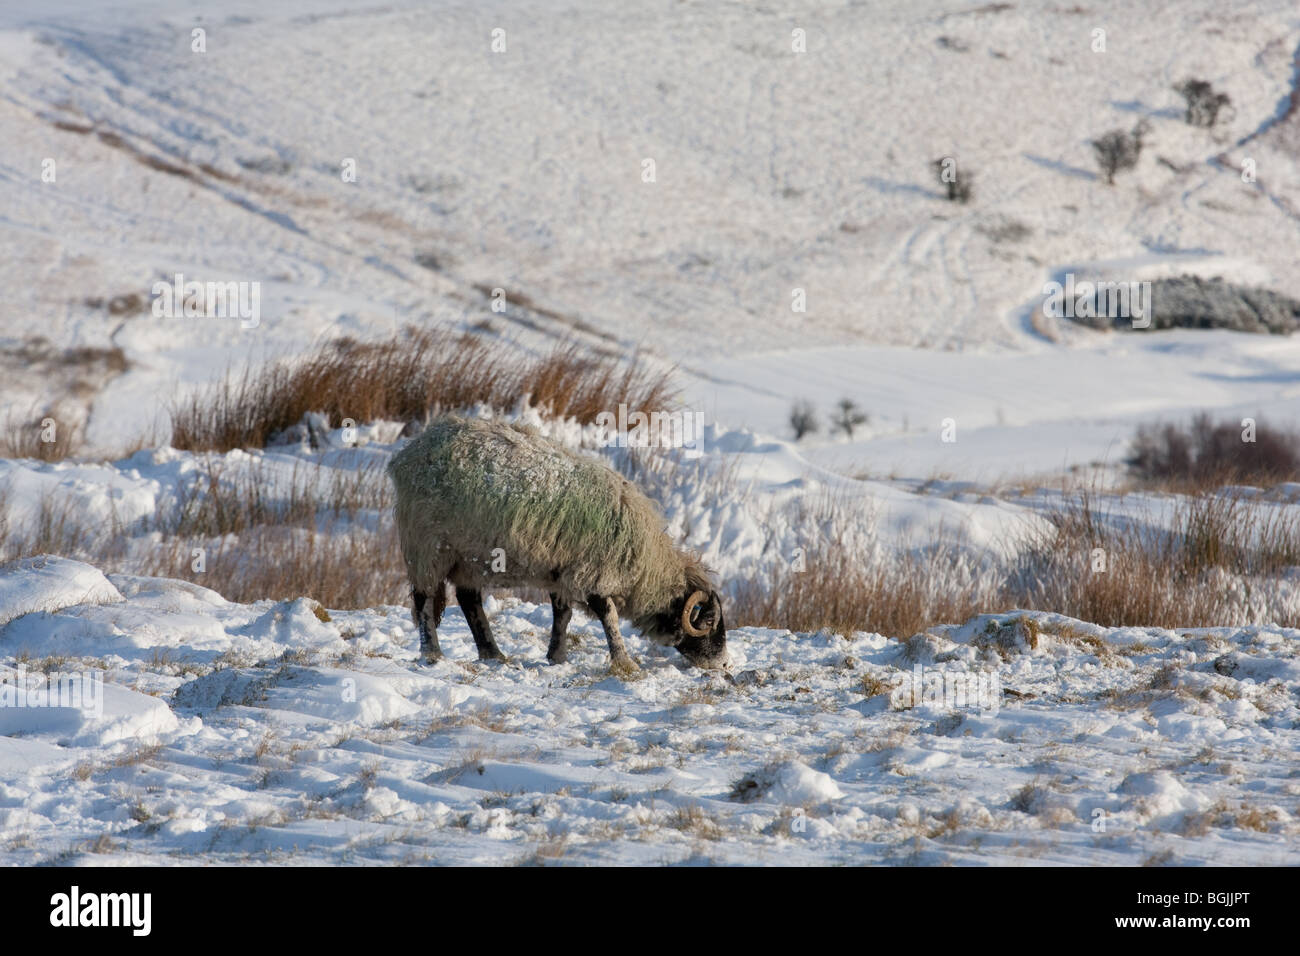 Pennine hill farm moutons sur la lande de neige en hiver Banque D'Images